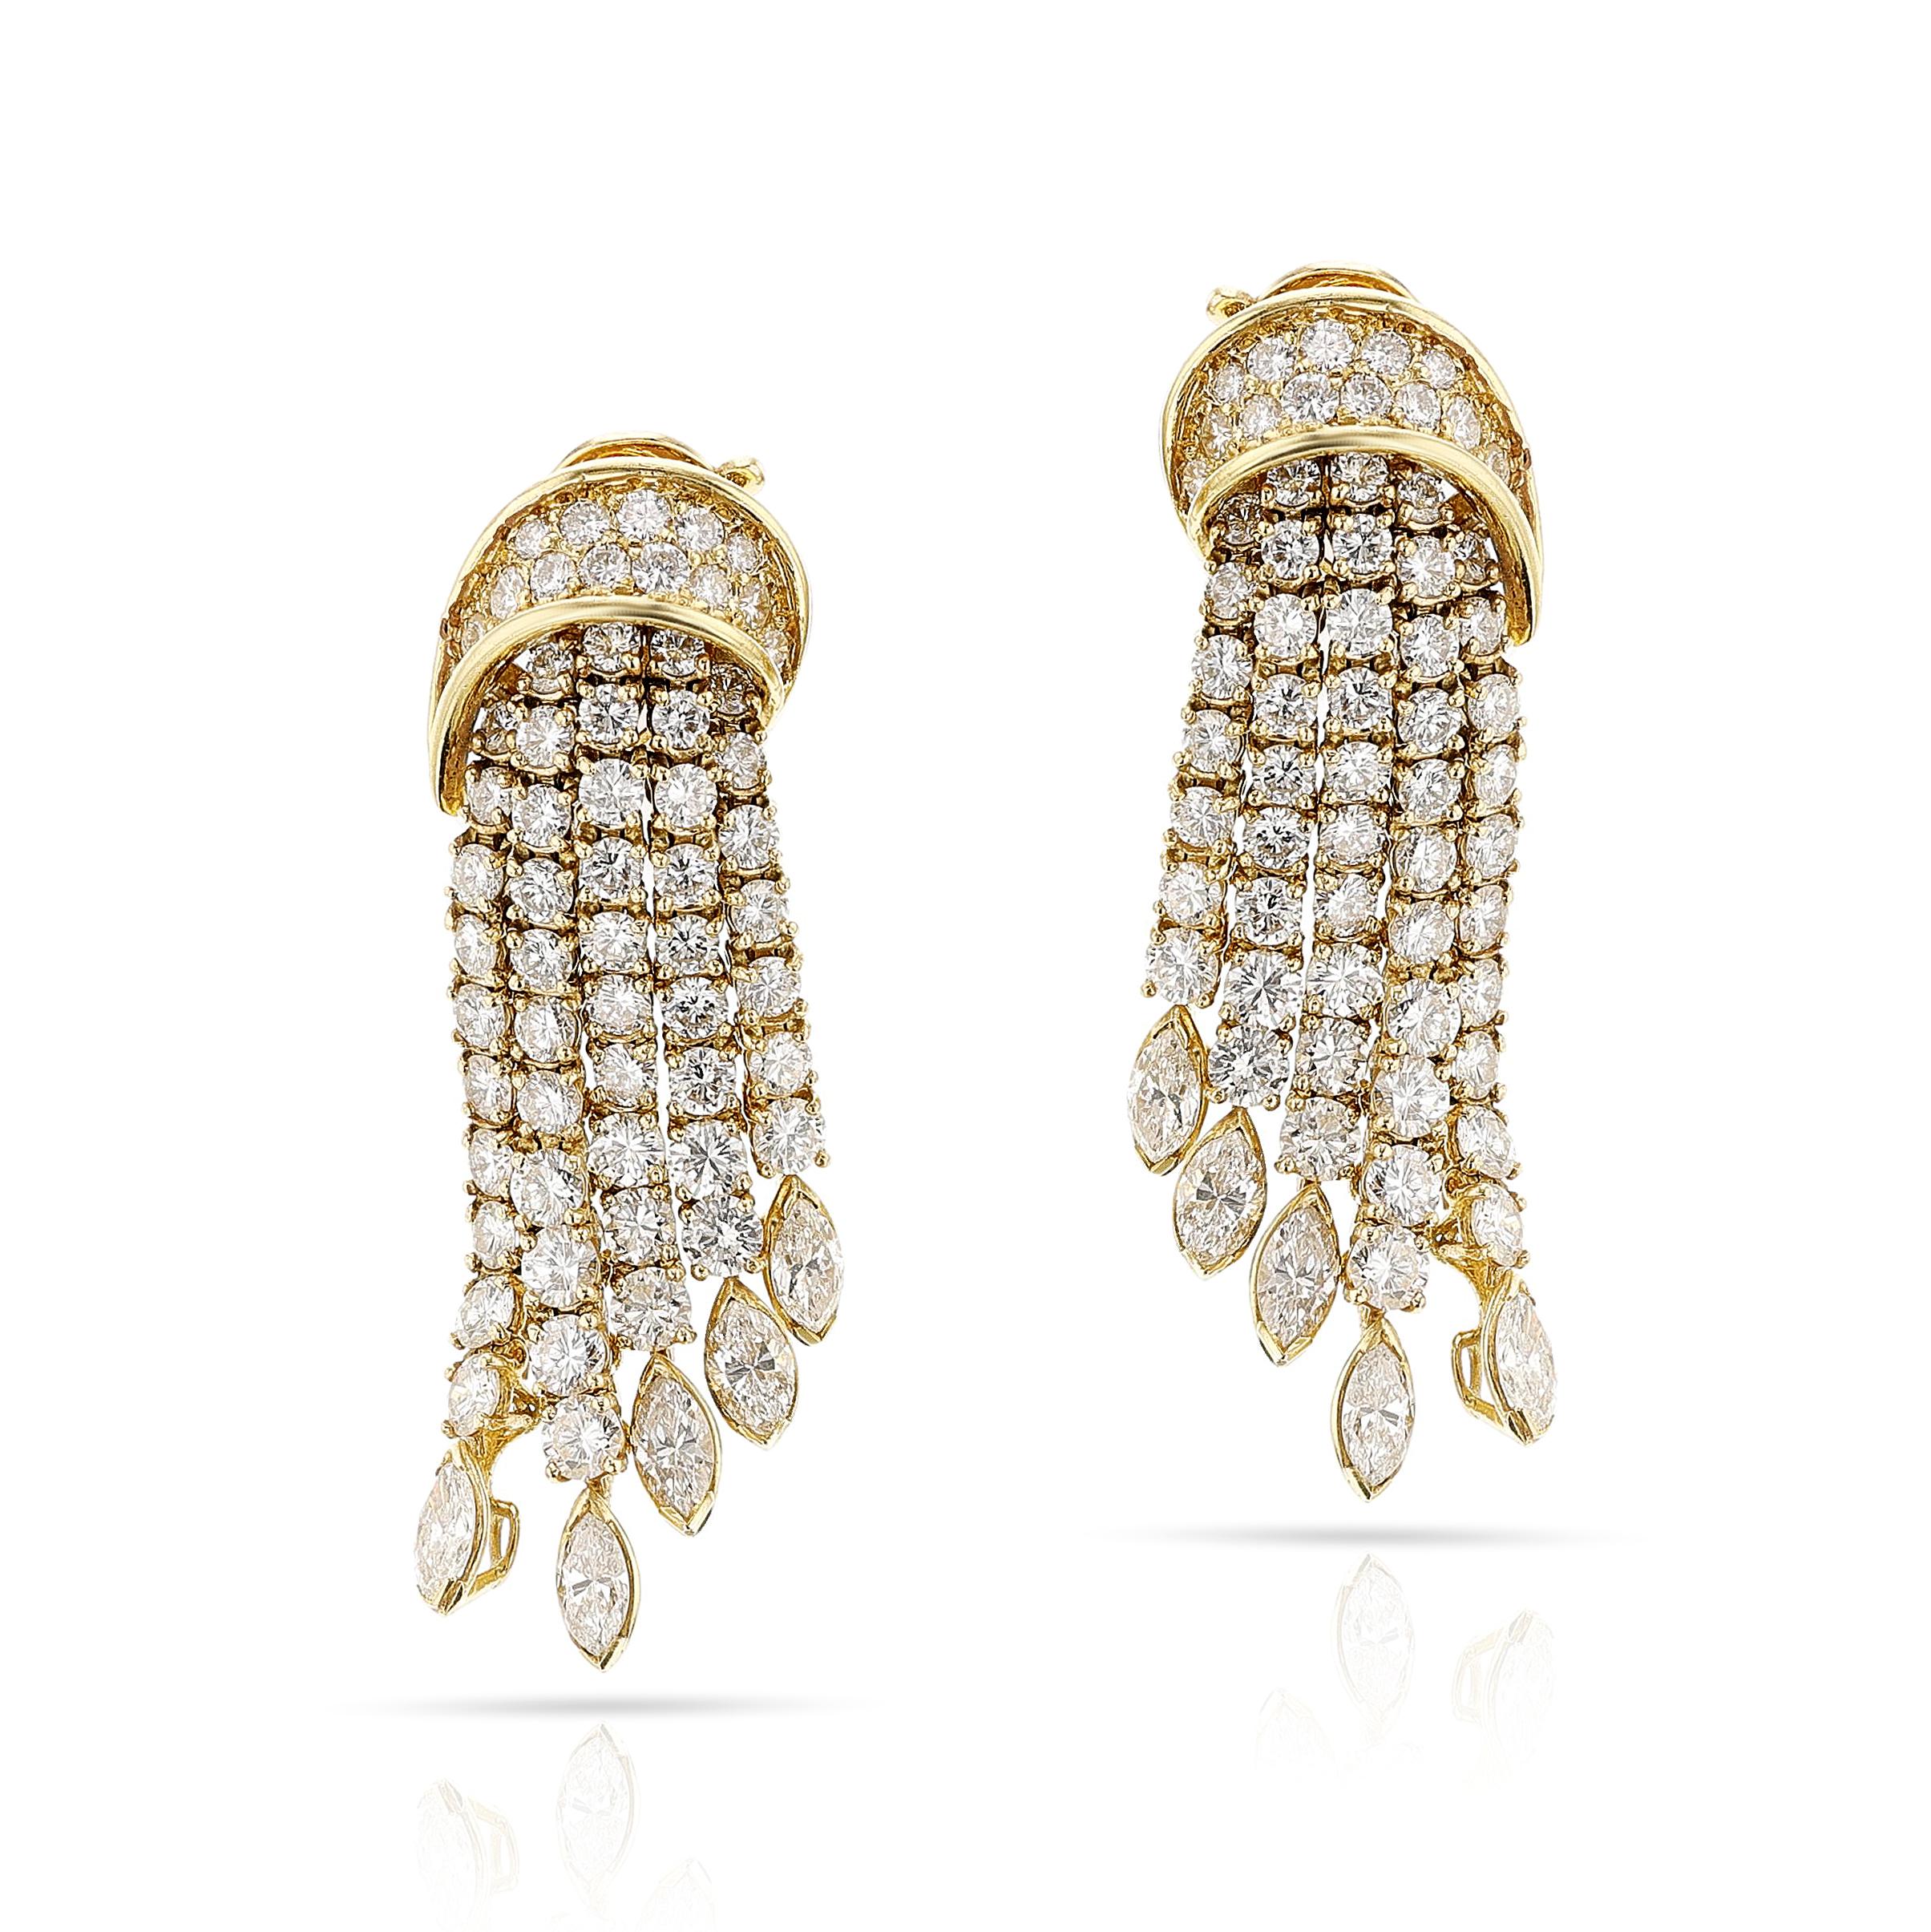 Ein Paar Fred Paris Diamond Dangling Earrings aus 18k Gelbgold. Das Gesamtgewicht der Diamanten beträgt ca. 11 Karat, Farbe G-H und Reinheit VS2/SI1. Signiert Fred Paris France, mit Herstellermarken und französischen Prüfstempeln. Das Gesamtgewicht